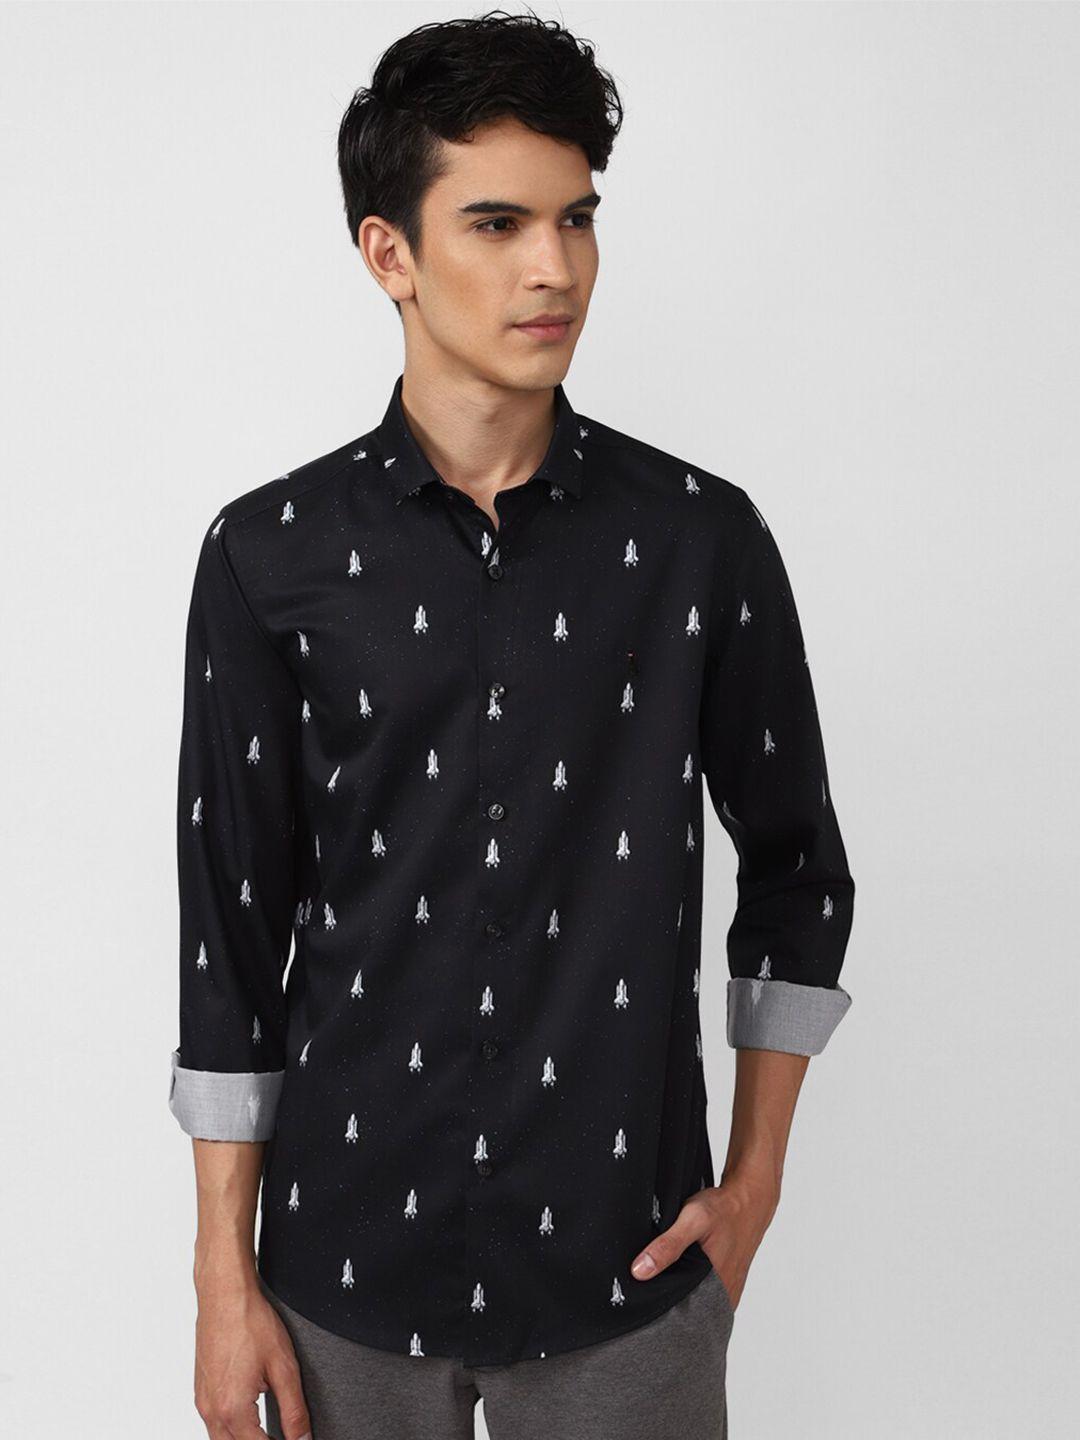 simon-carter-london-men-black-slim-fit-printed-casual-shirt